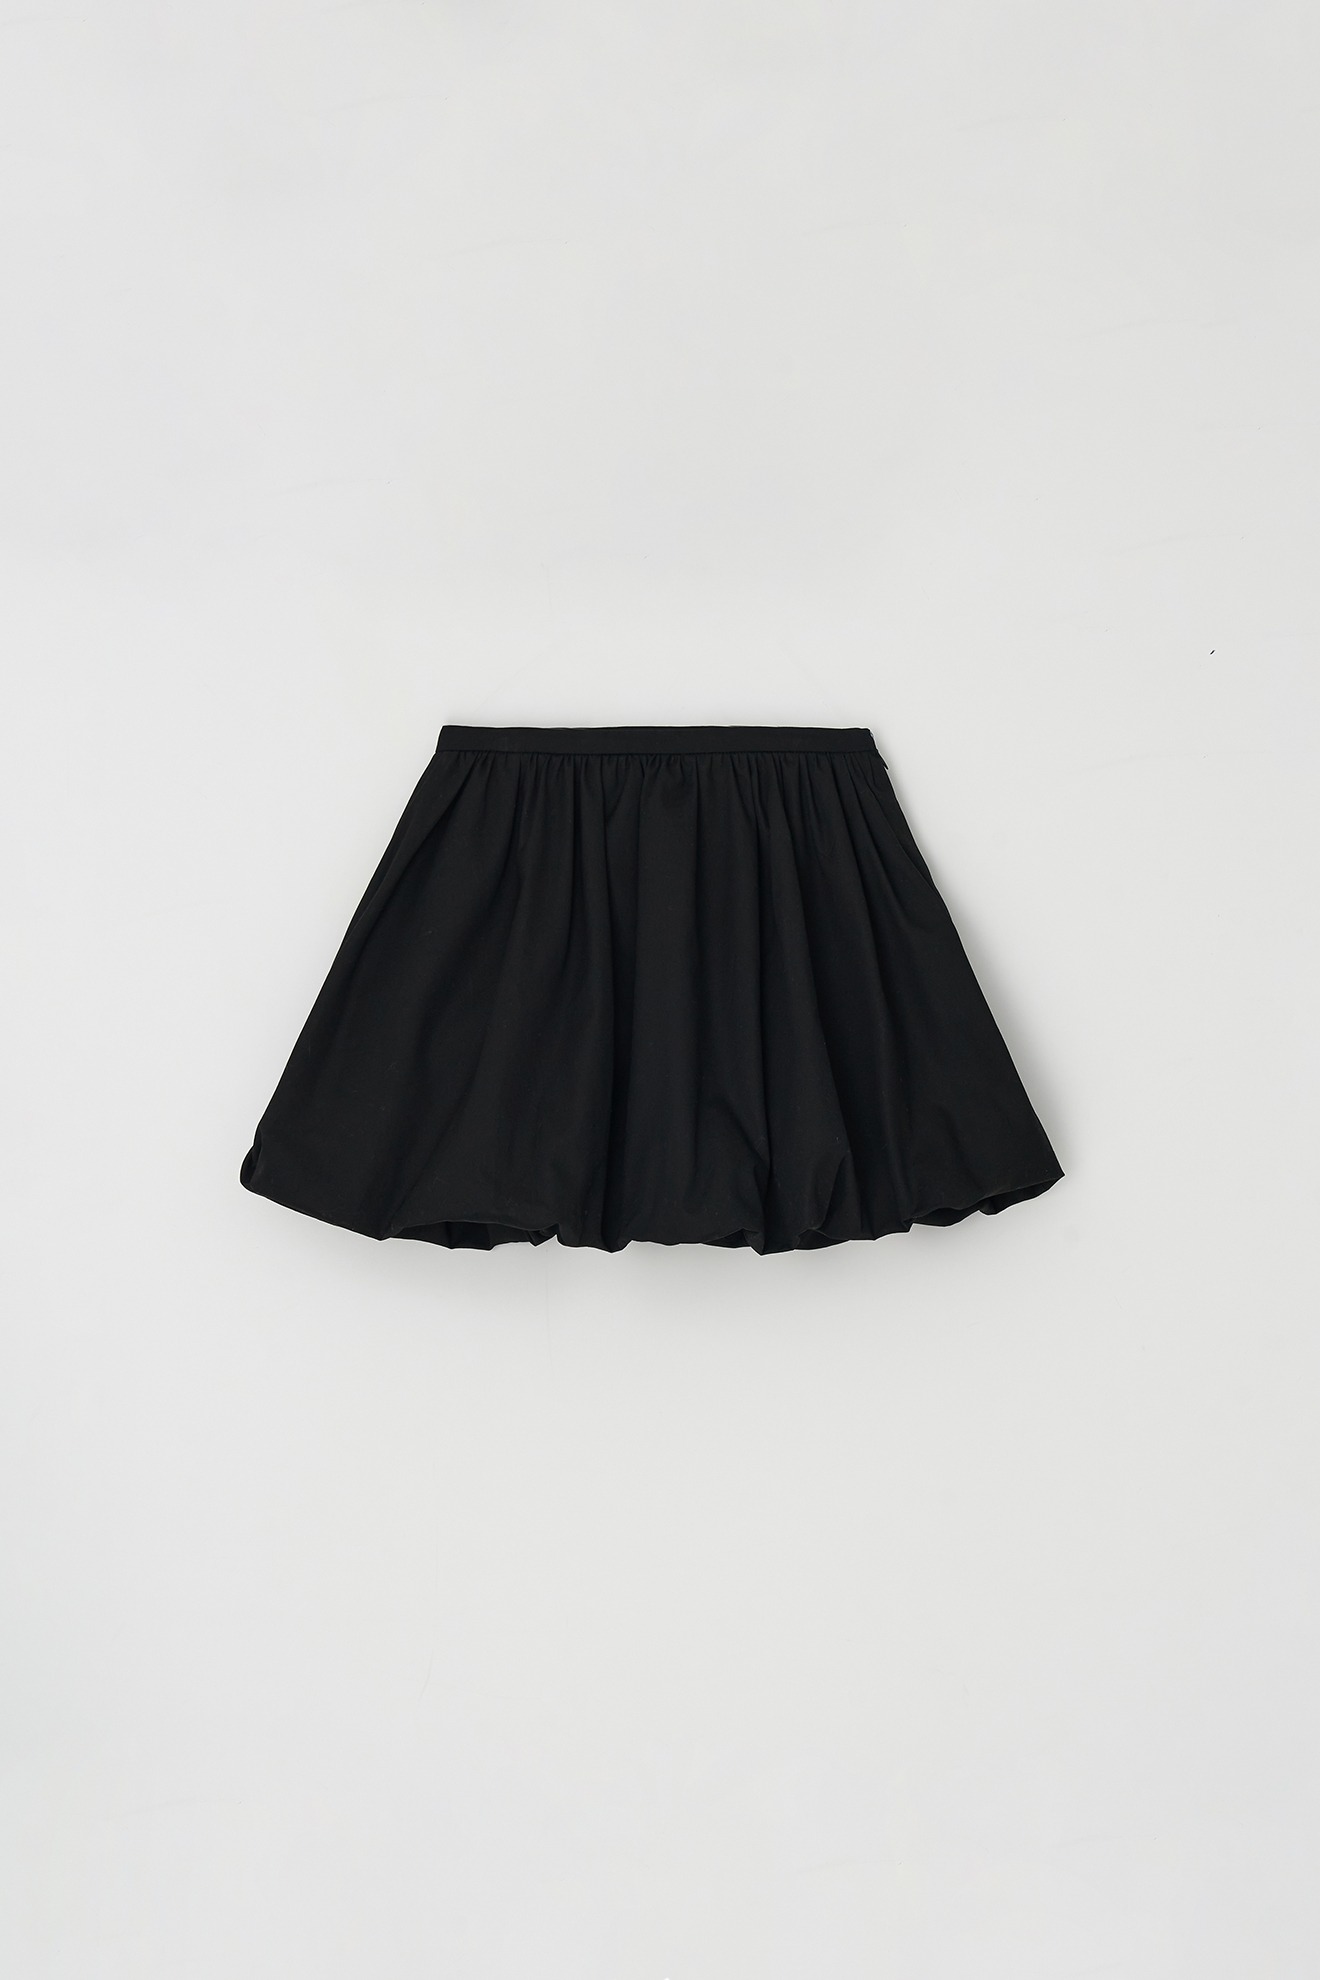 Volume Skirt (black)